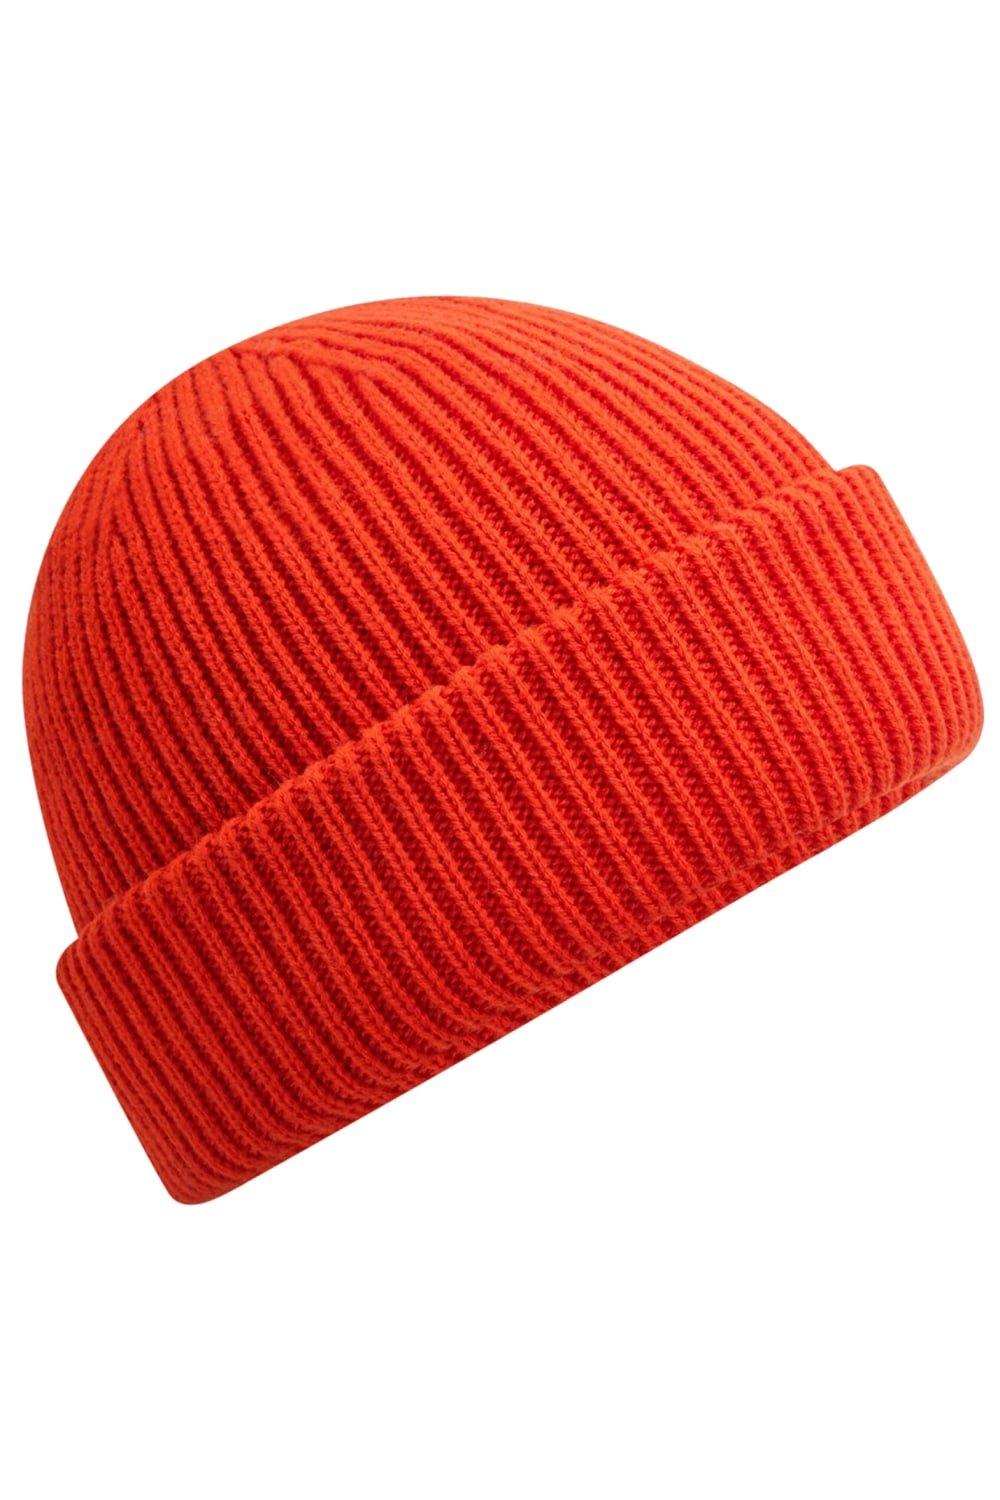 Ветрозащитная шапка Elements Beechfield, красный